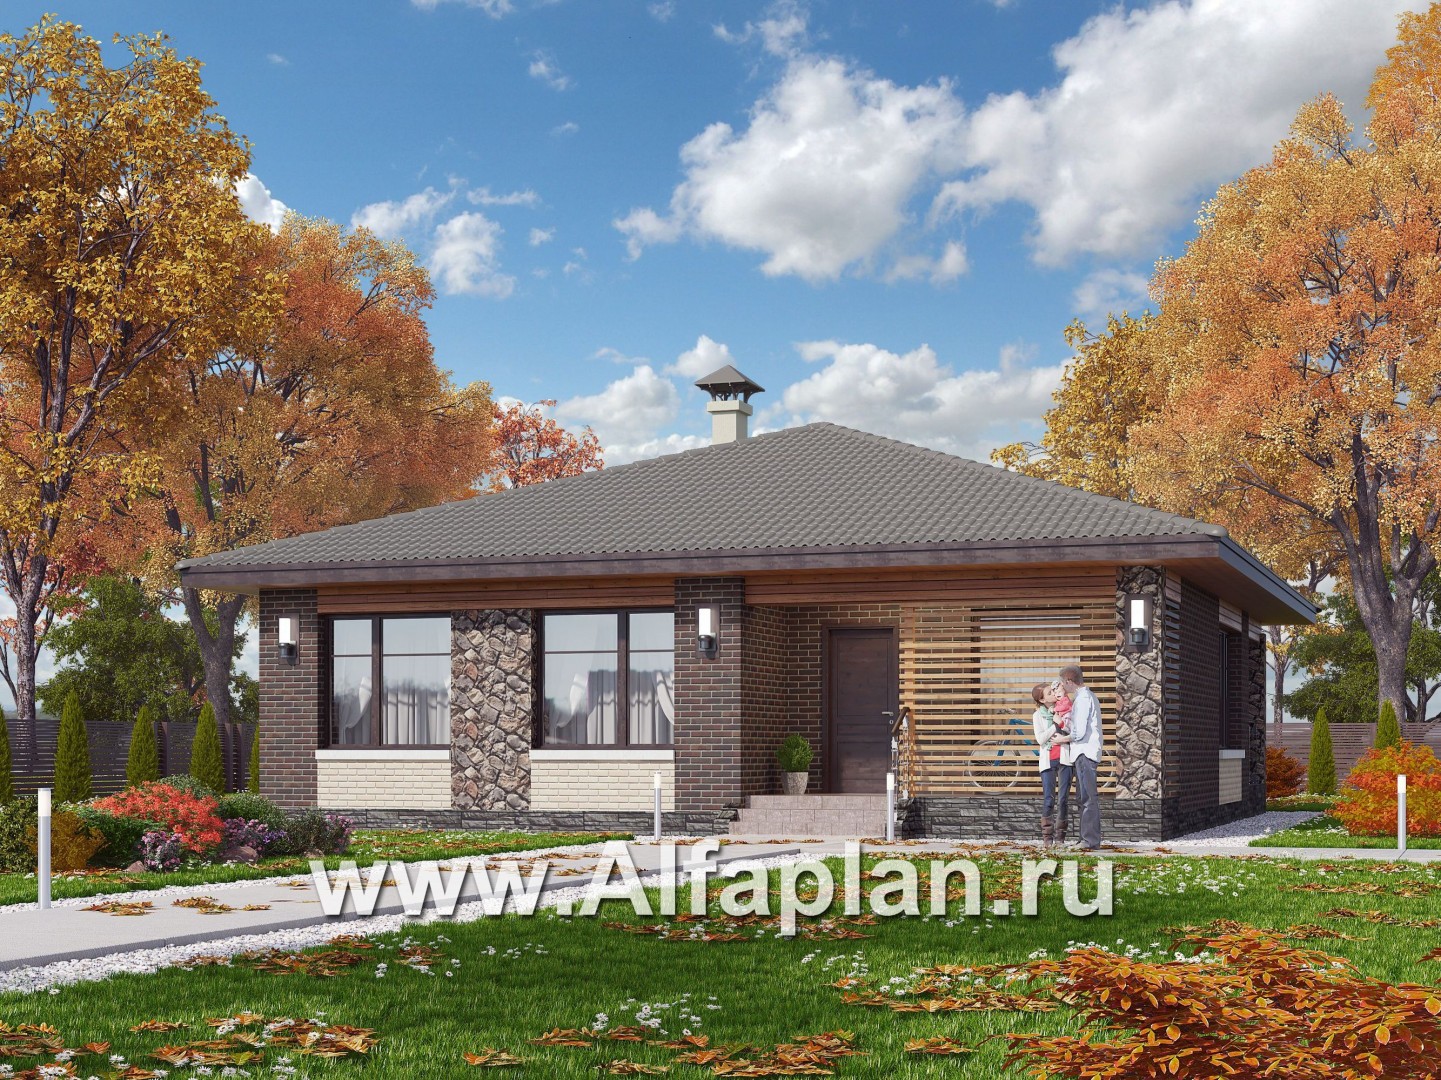 «Волхов» - проект дома 100 кв одноэтажный из кирпича -3 спальни, планировка дома с террасой - основное изображение